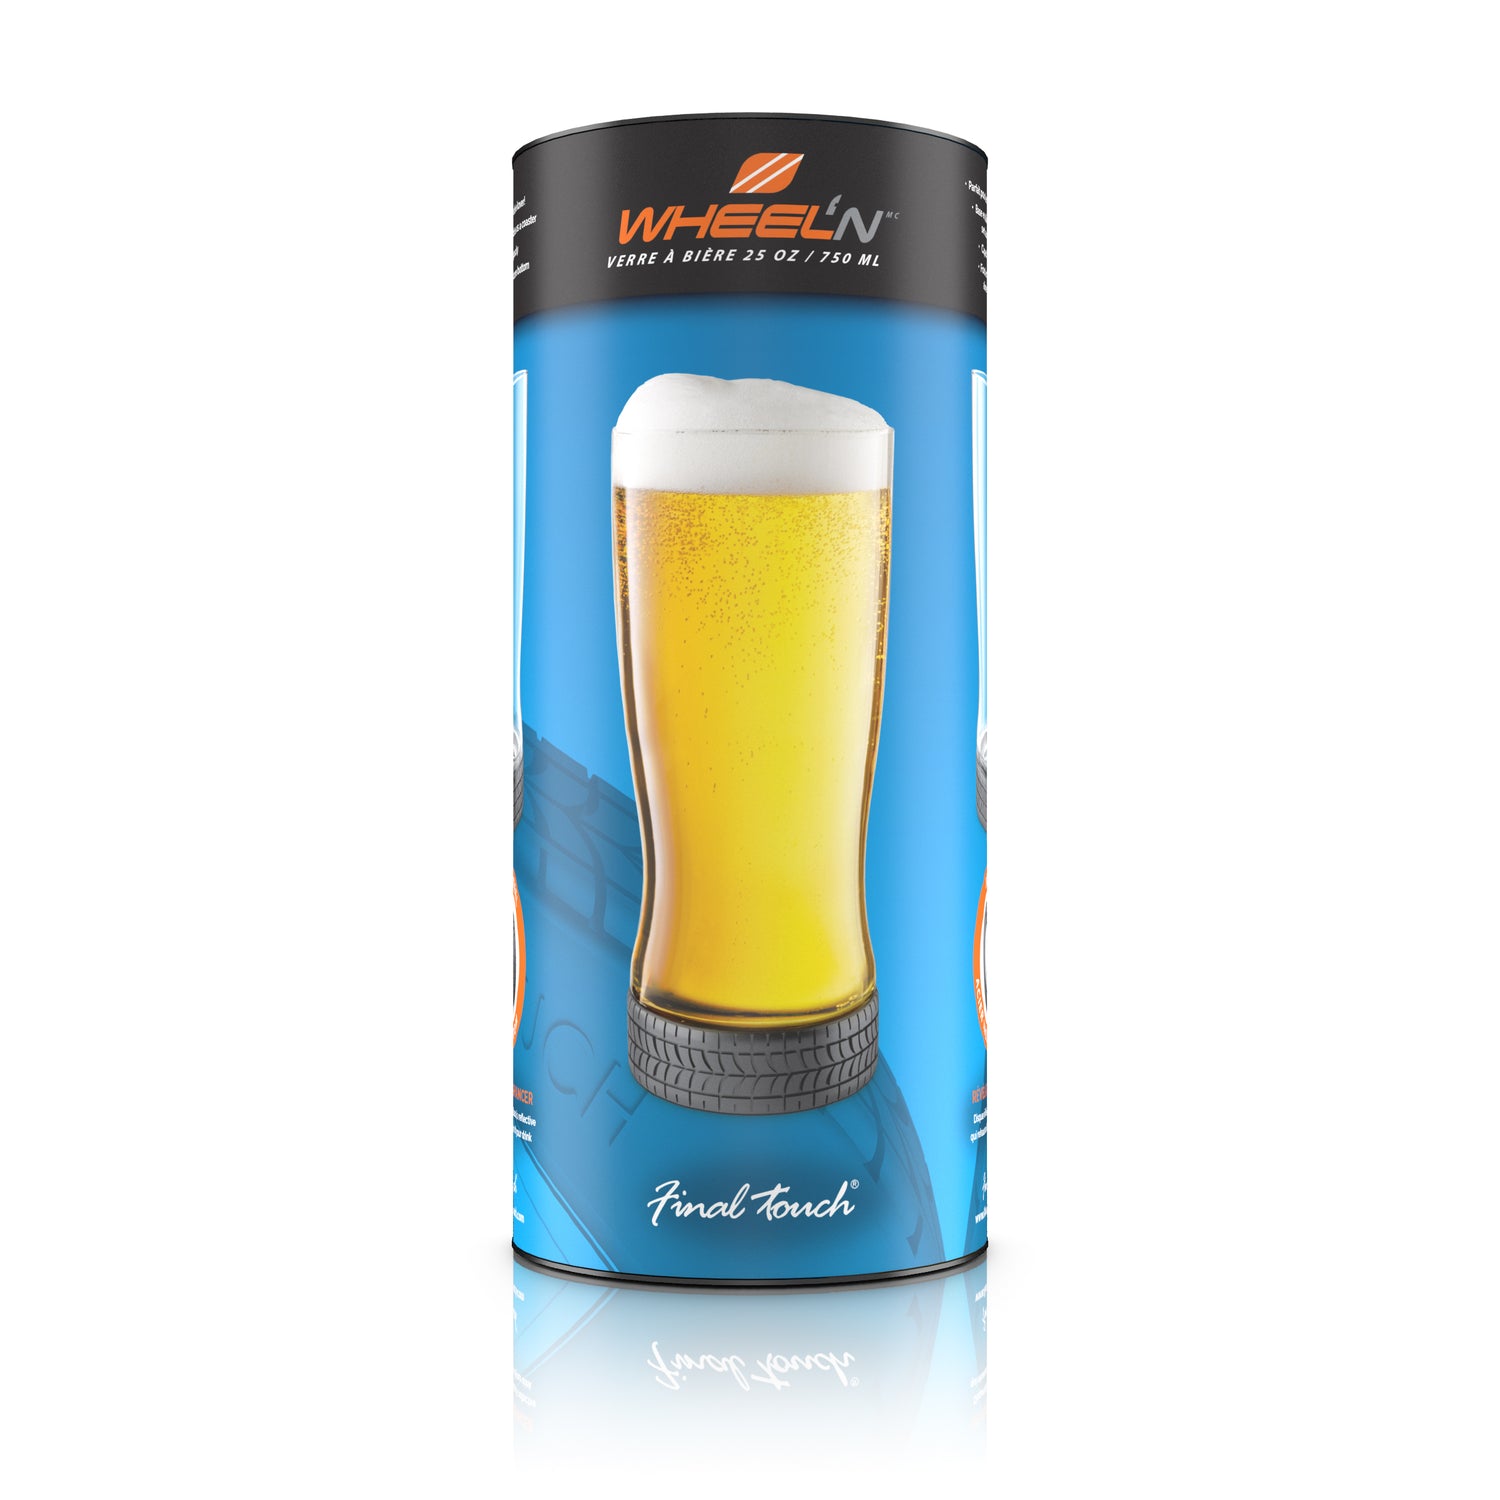 Wheel'n 25 oz / 750 ml Beer Glass